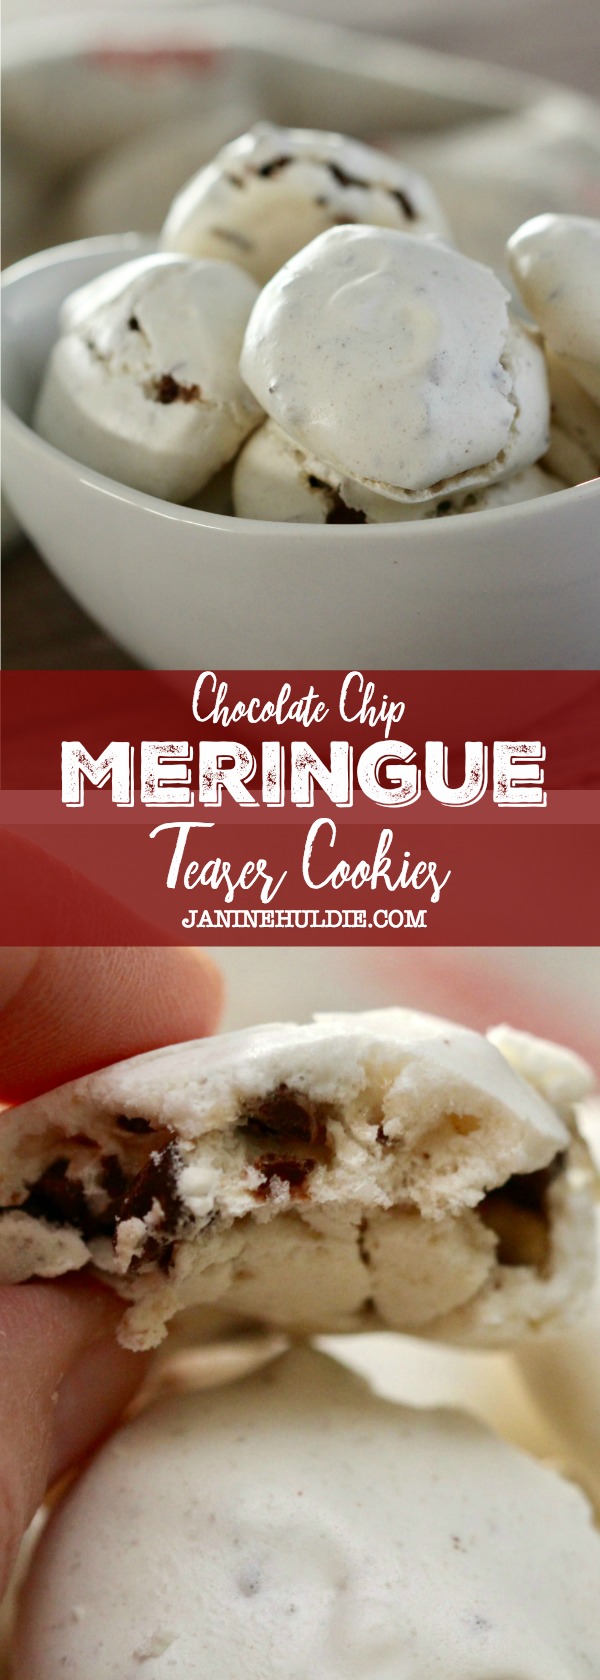 Meringue Chocolate Chip Teaser Cookies